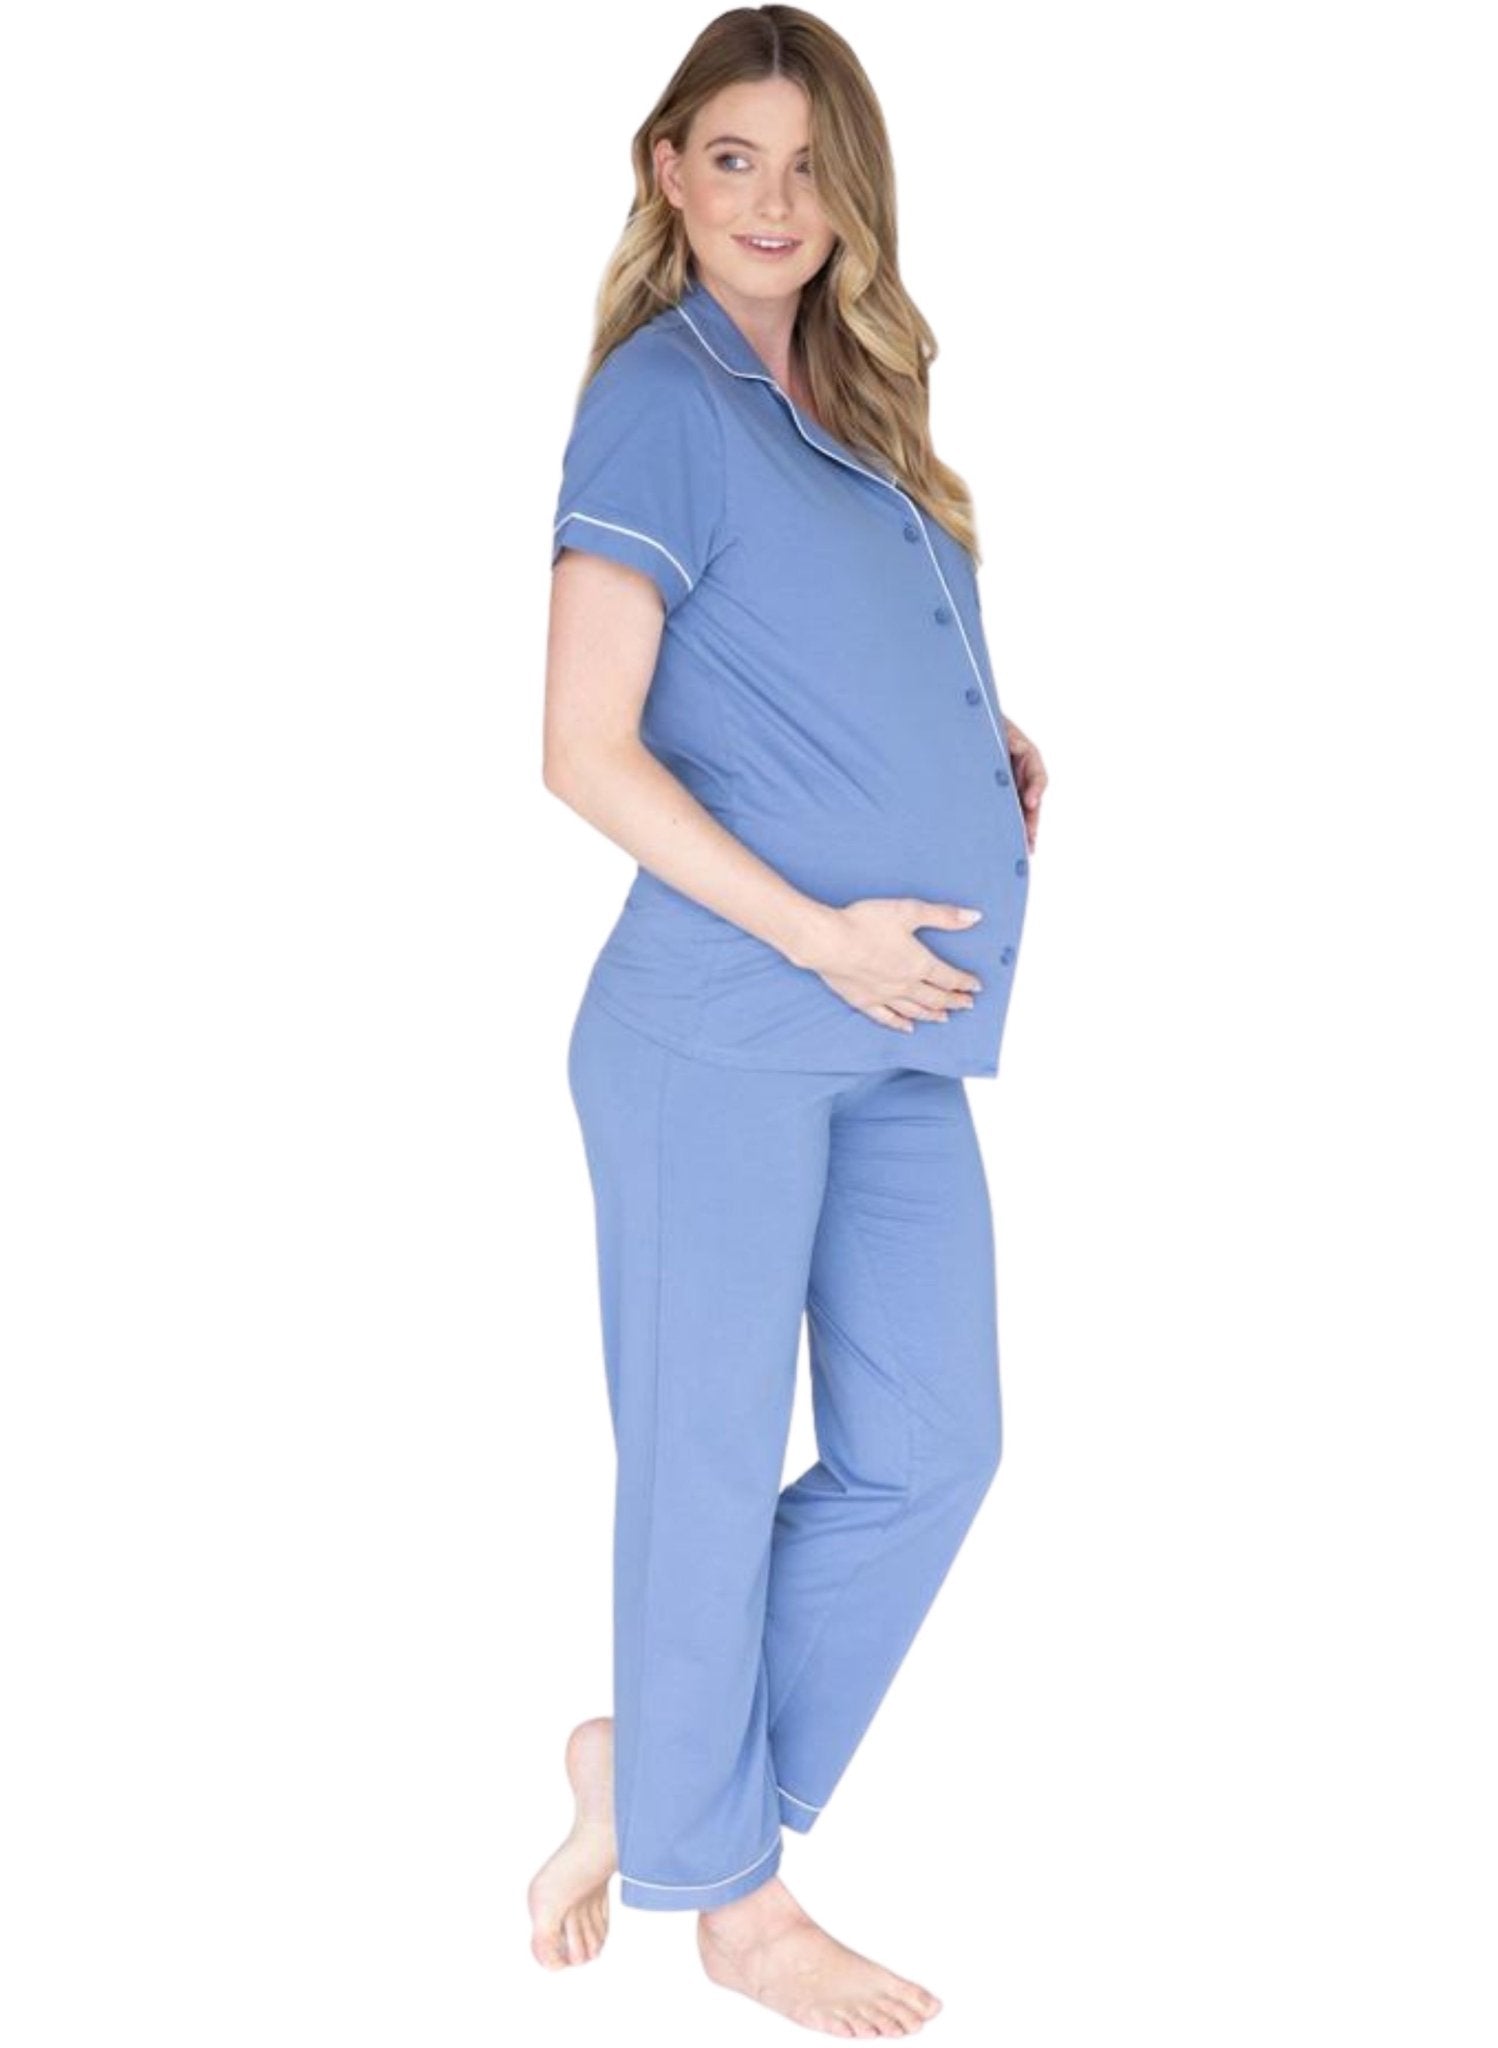 Maternity and Nursing Pyjama Long Pants Set - Blue - Mums and Bumps